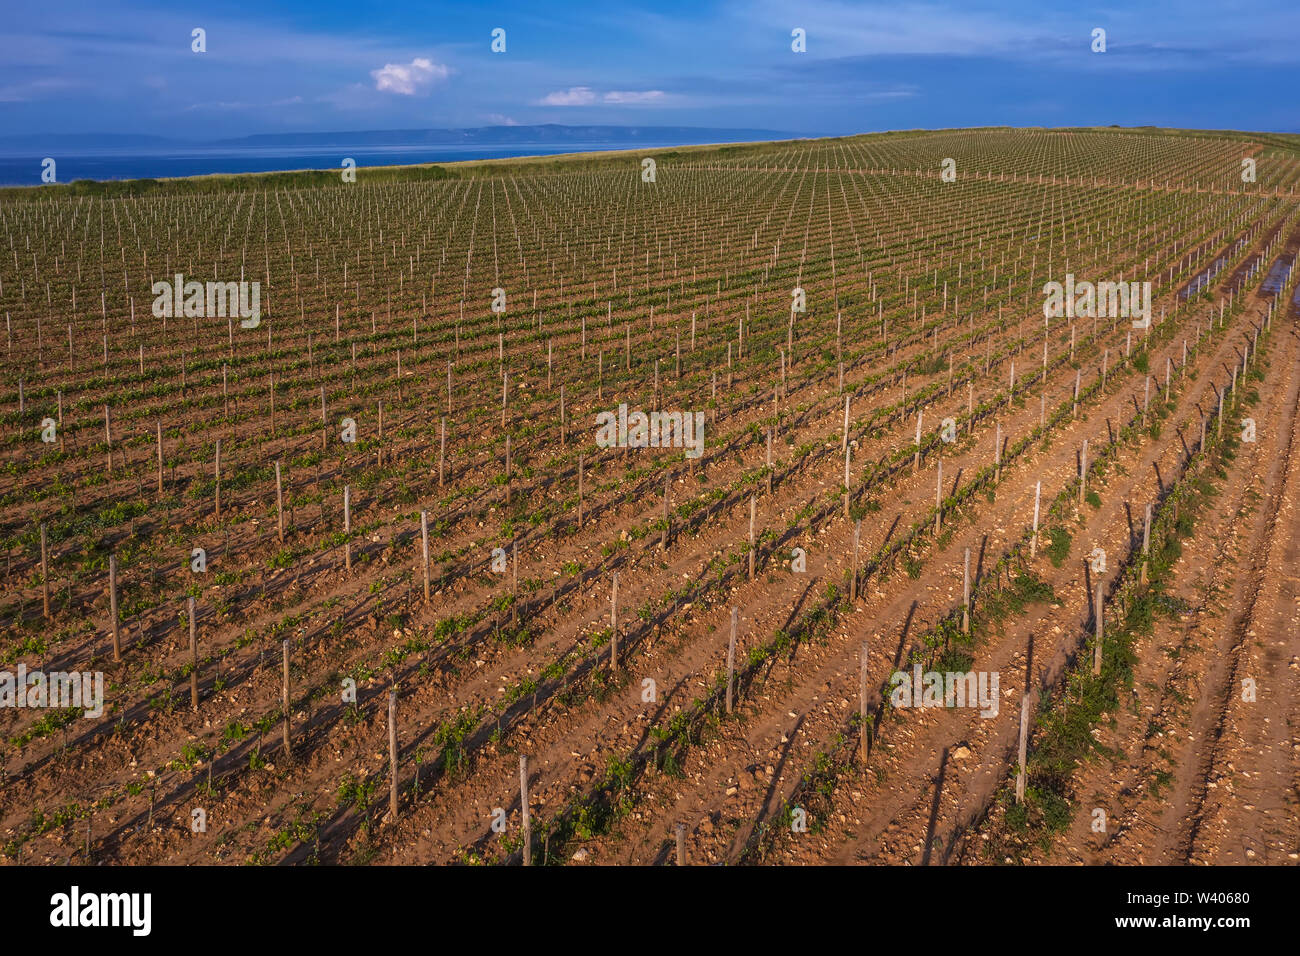 Vue aérienne de vignoble entouré par la mer à Marlera, Istrie, Croatie Banque D'Images